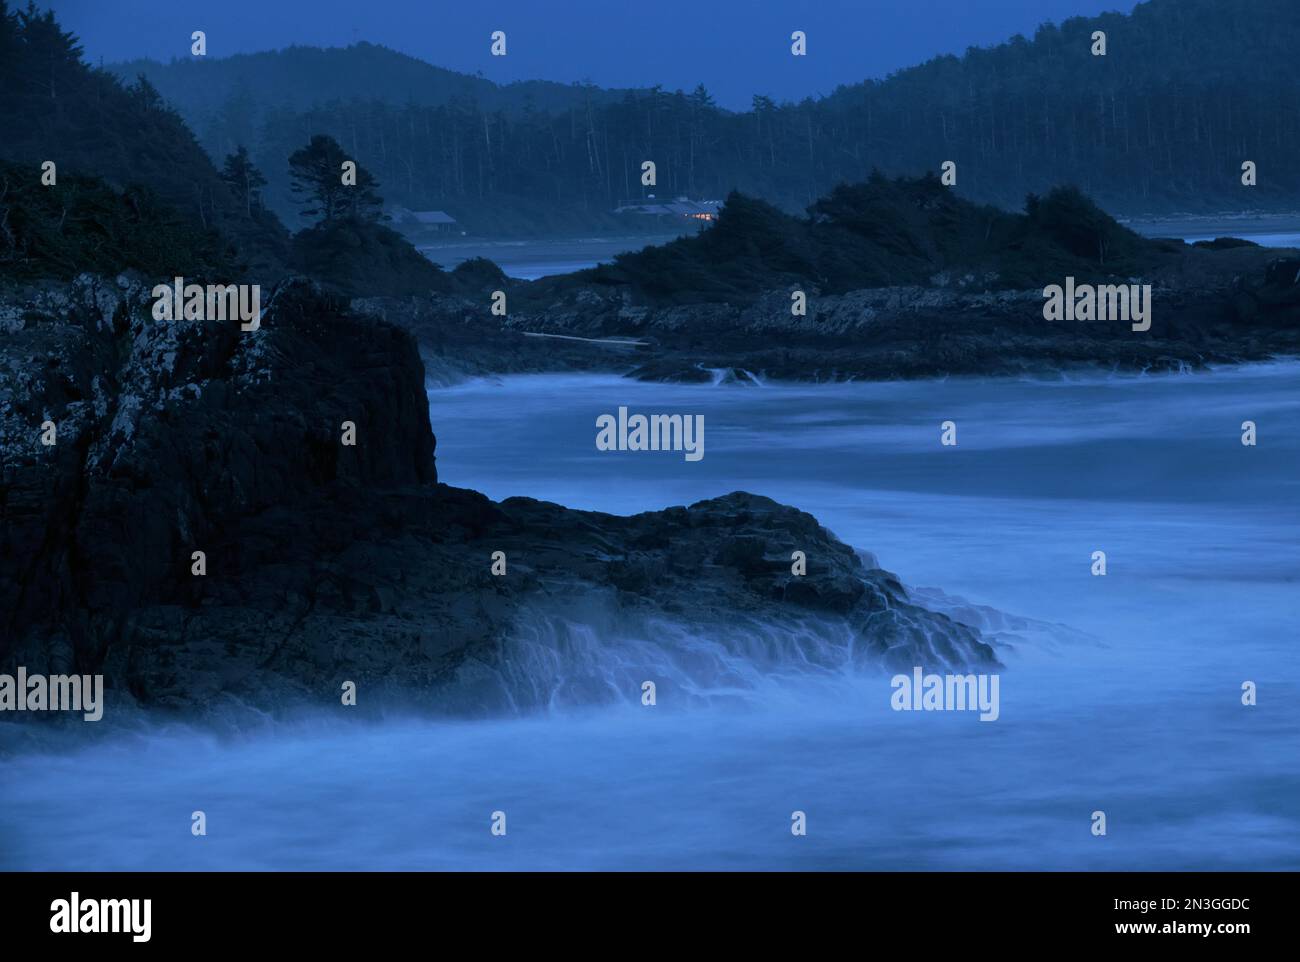 La notte cade su una costa rocciosa dell'Isola di Vancouver, British Columbia, Canada; Isola di Vancouver, British Columbia, Canada Foto Stock